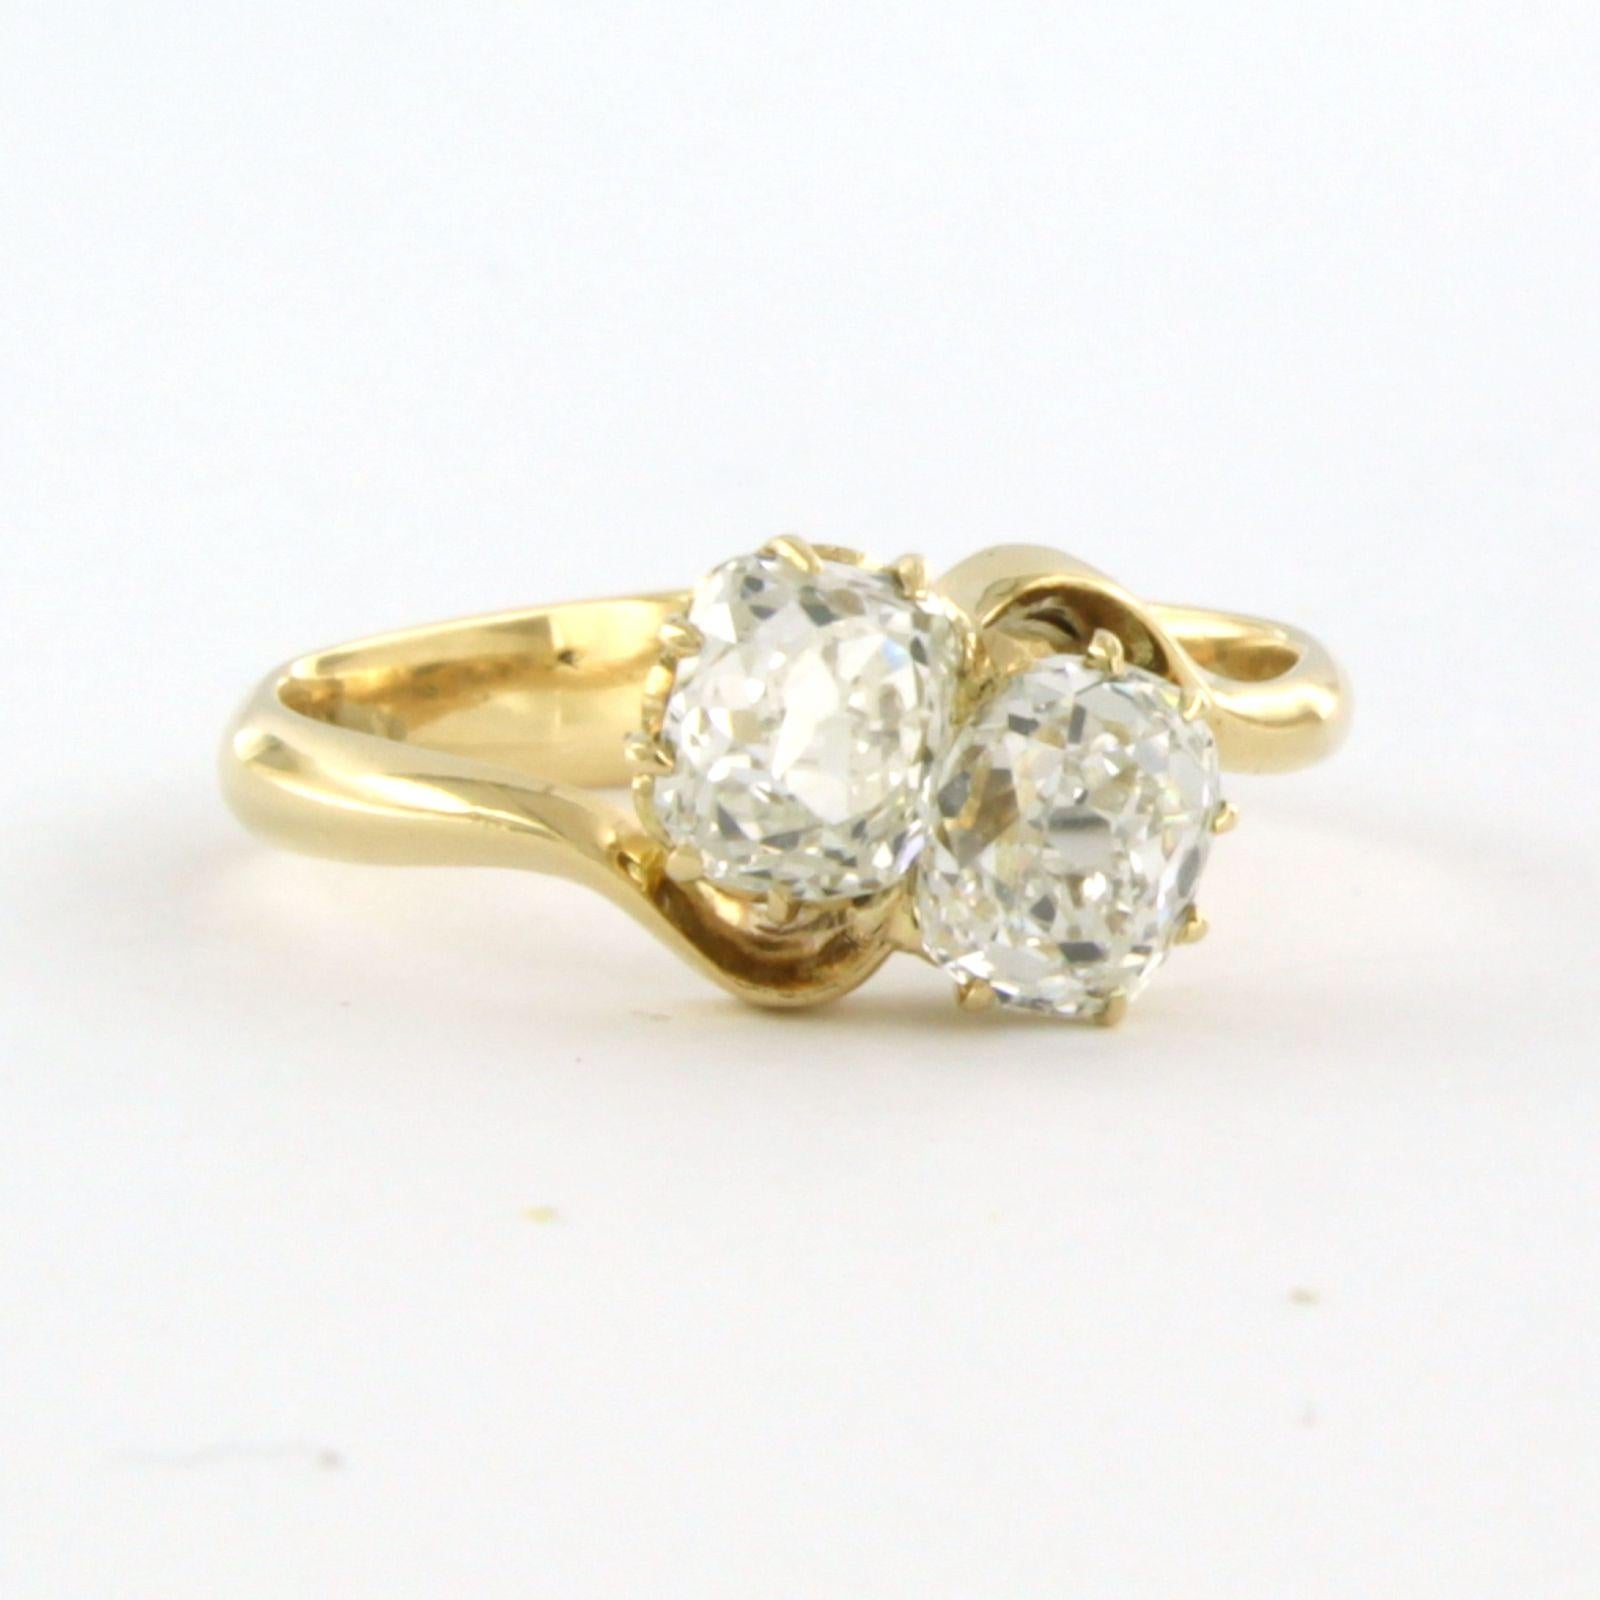 IGI DIAMOND REPORT - Anillo de oro amarillo de 14k engastado con dos diamantes talla mina vieja y talla única de hasta. 1,59 ct - talla del anillo EE.UU. 6 - UE. 16.5(52)

descripción detallada:

Incluye dos IGI diamante informe certificado número